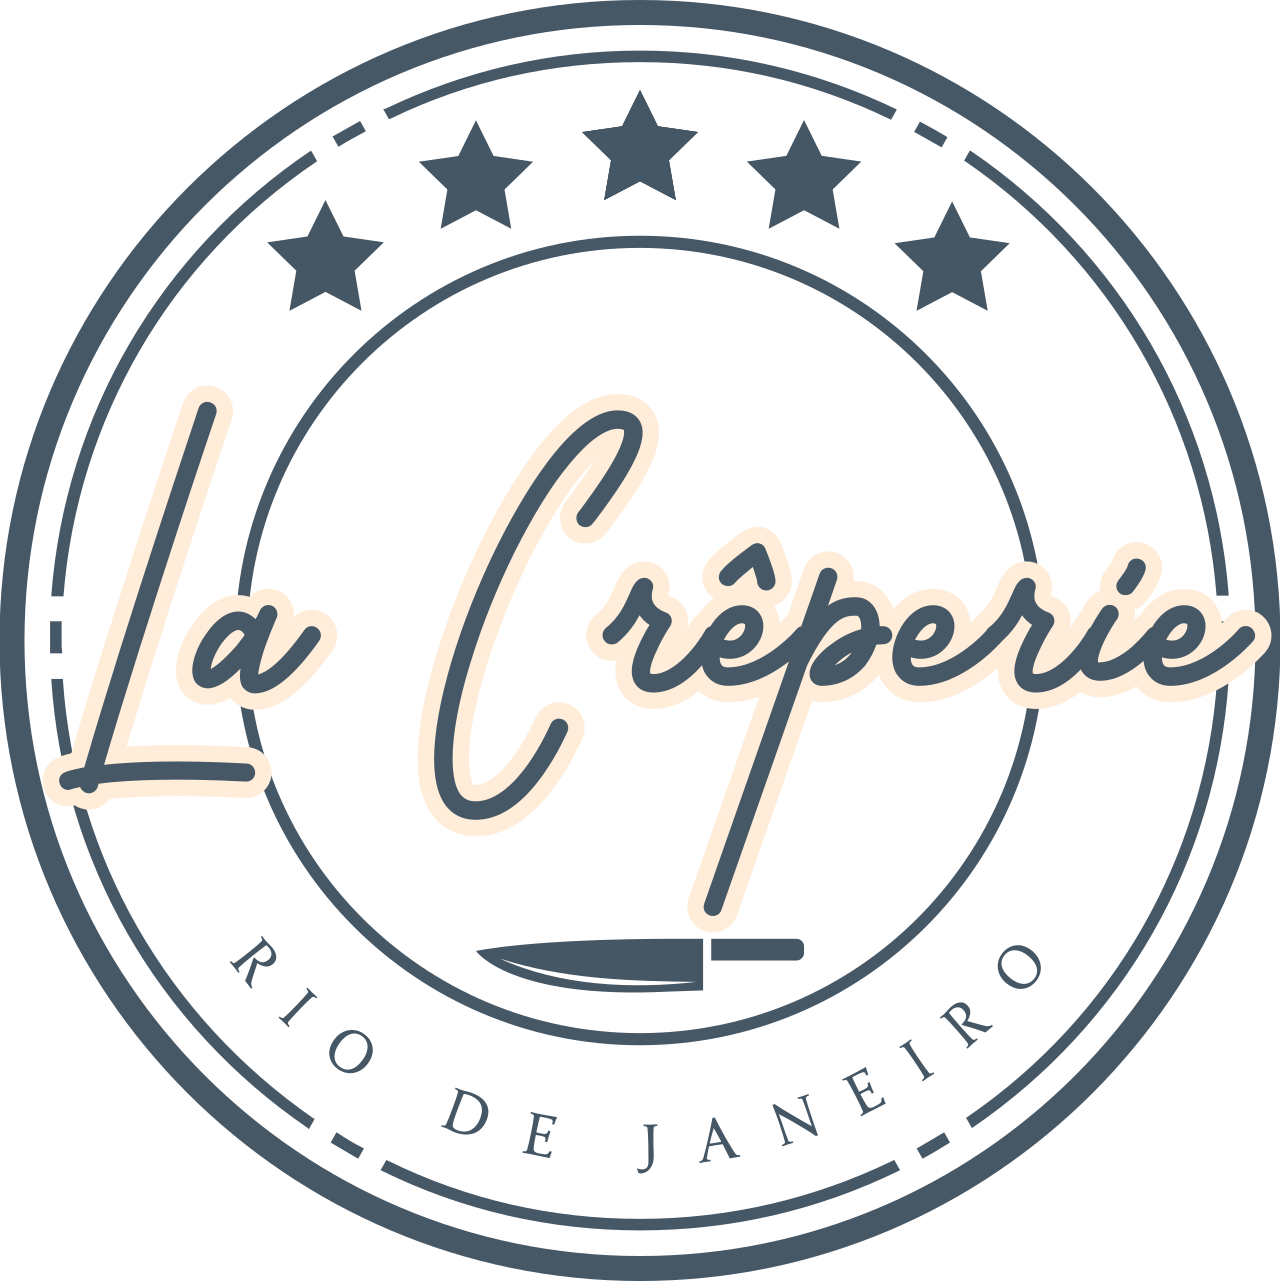 La Crêperie's logo